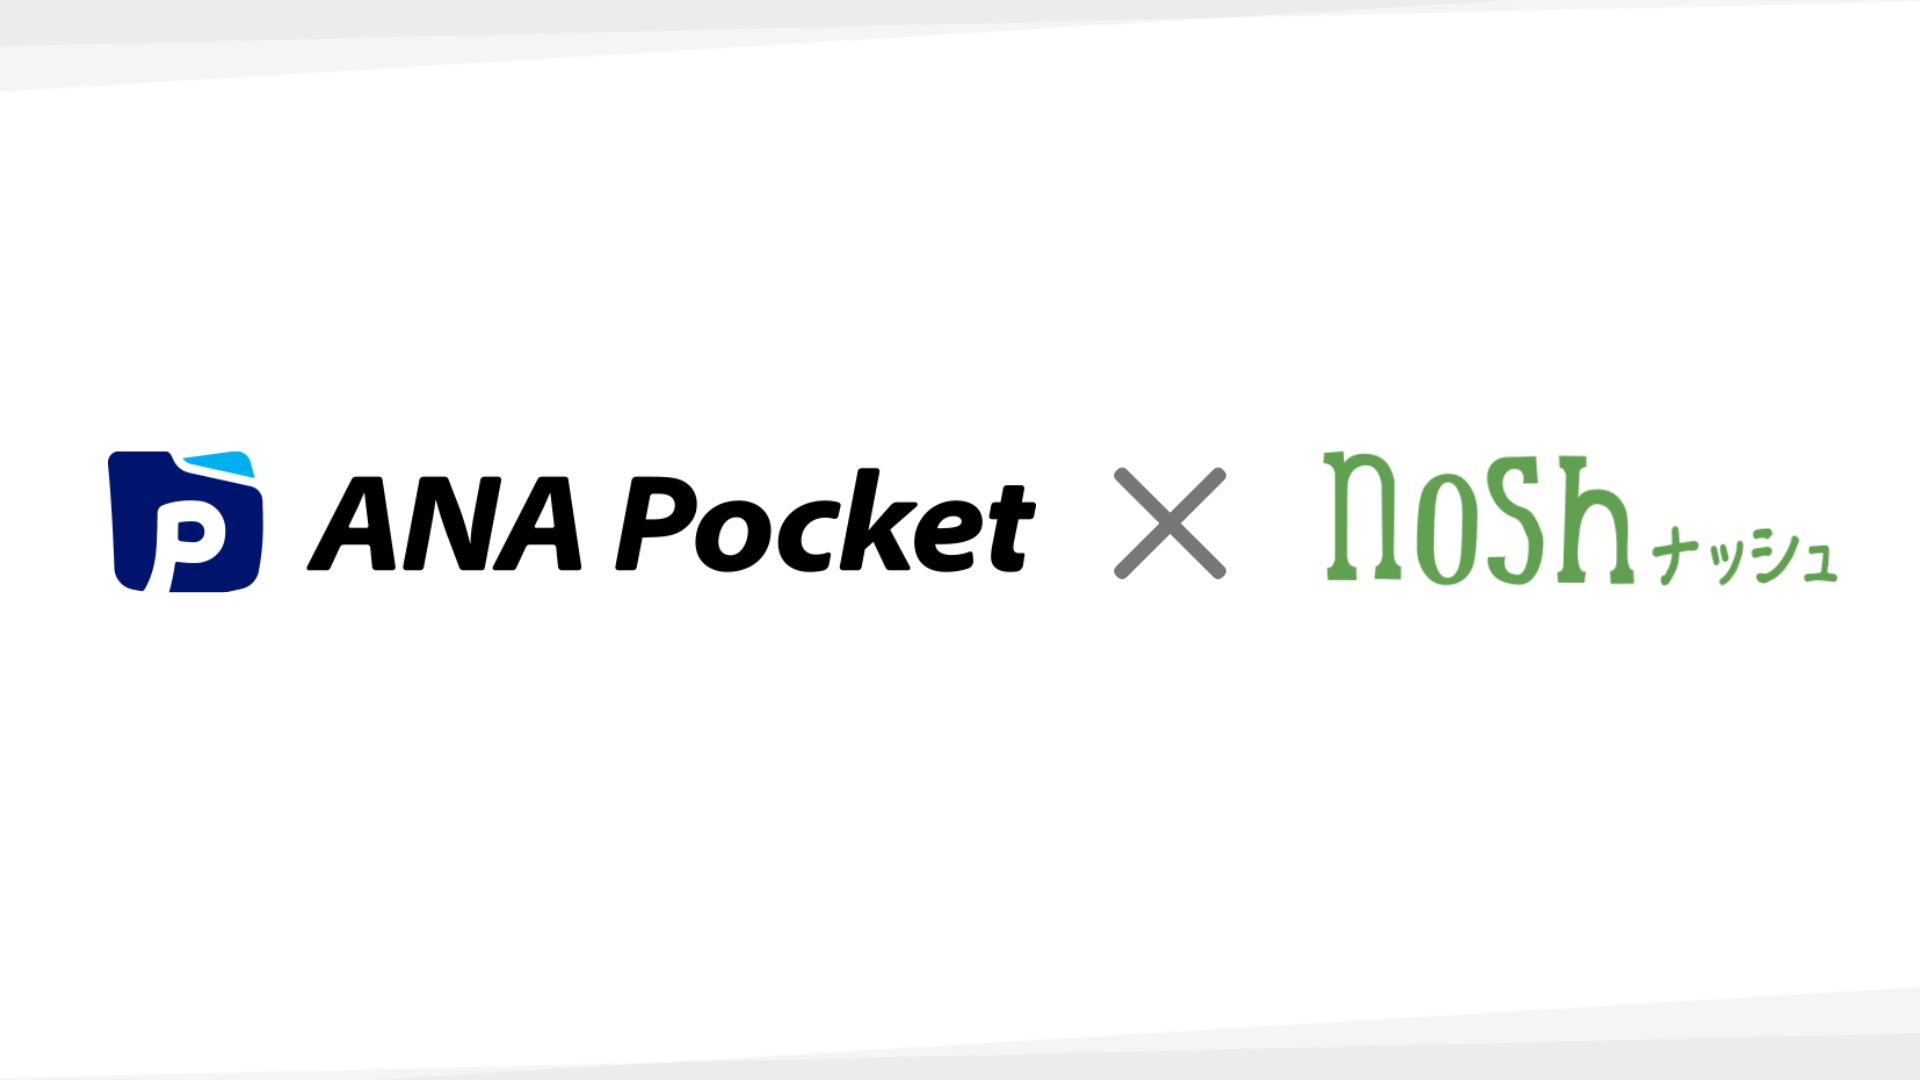 歩いて乗って、移動するだけでポイントが貯まるアプリ『ANA Pocket』を運営する「ANA X株式会社」と「ナッシュ株式会社」サービス優待特典提供のお知らせのサブ画像1